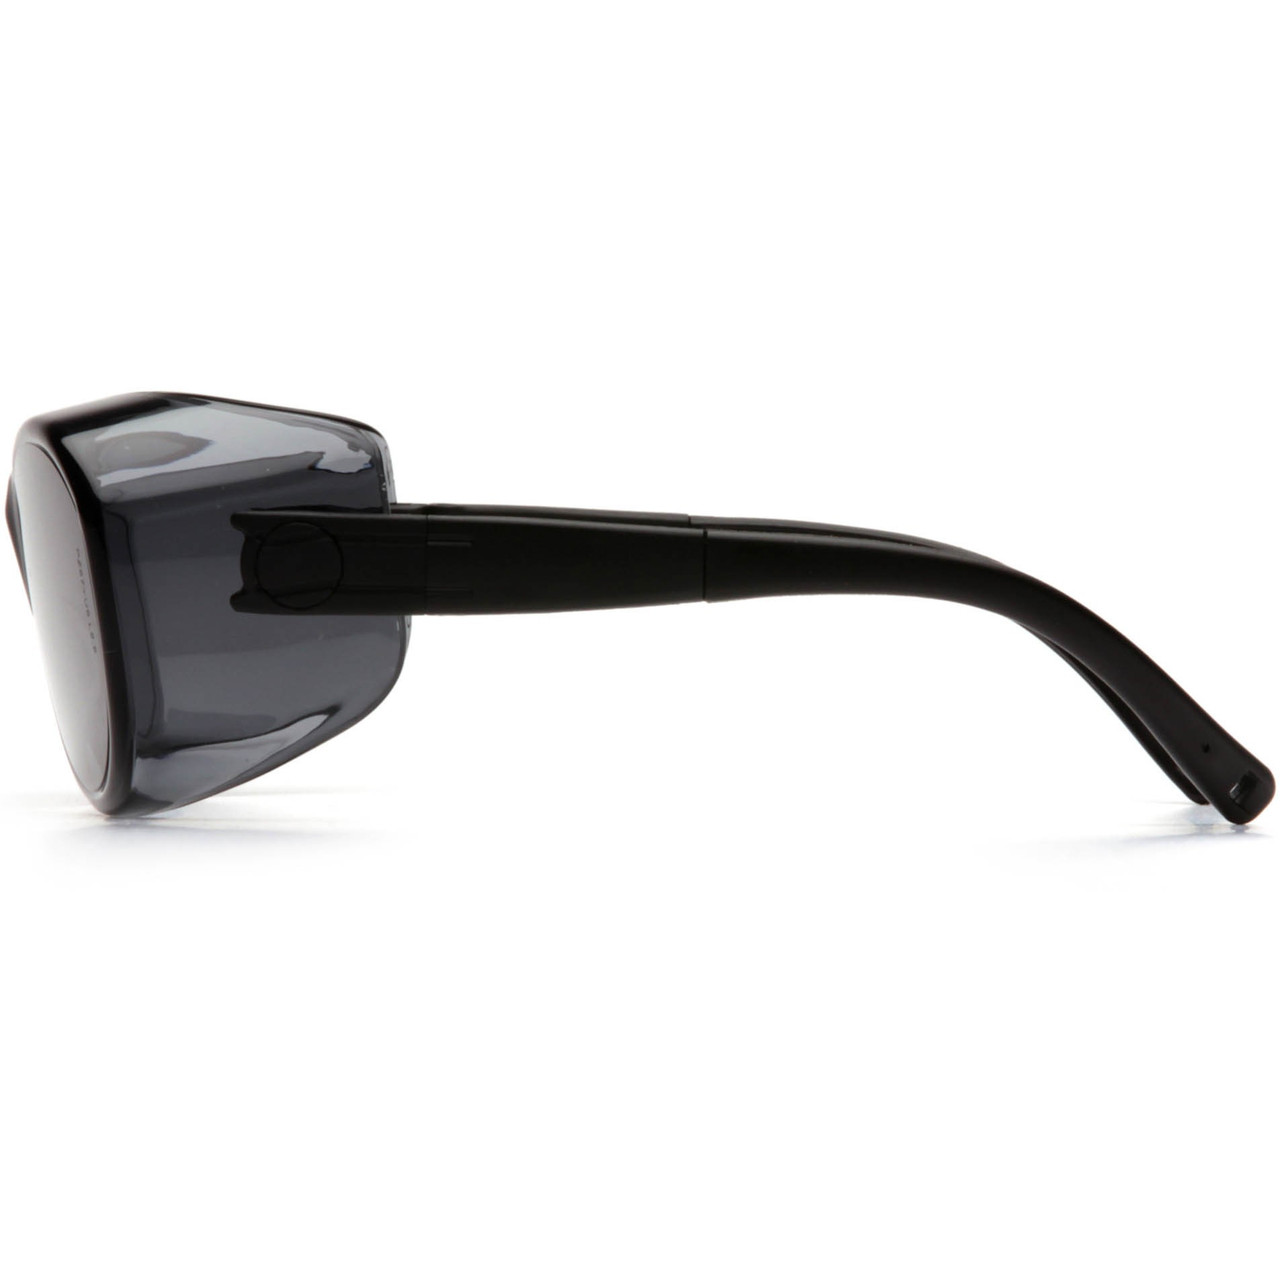 S3520SJ - PyramexX® OTS Safety Glasses -  Smoke Lens